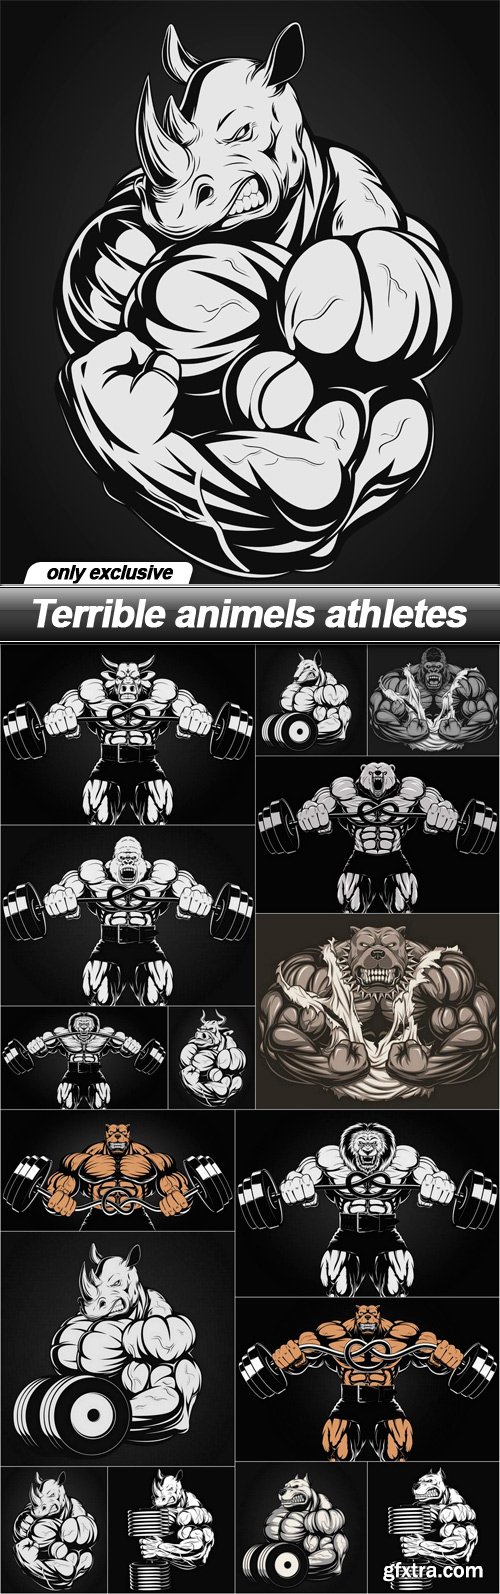 Terrible animels athletes - 16 EPS